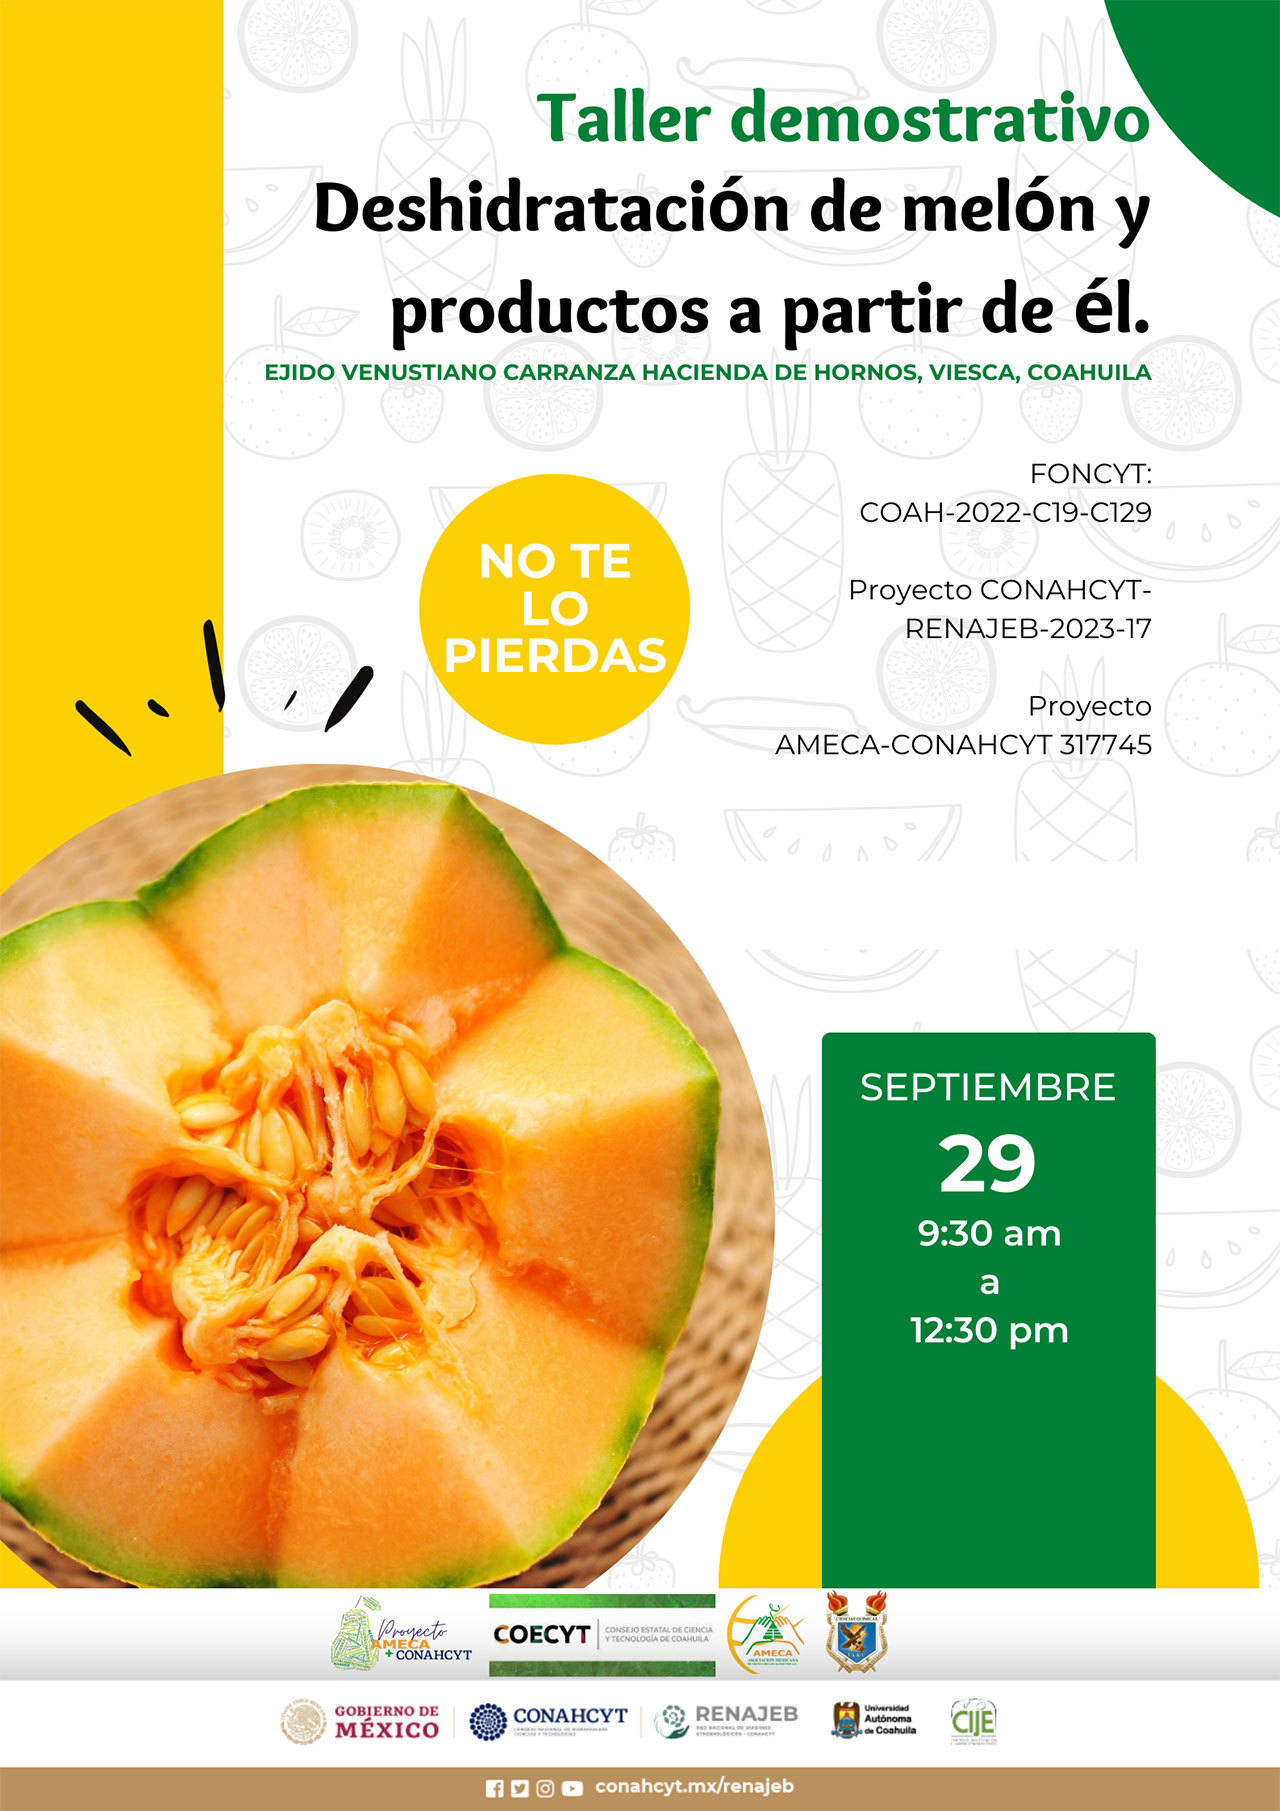 Taller Demostrativo: Deshidratación de melón y productos a partir de él. Viesca, Coahuila - AMECA, AC